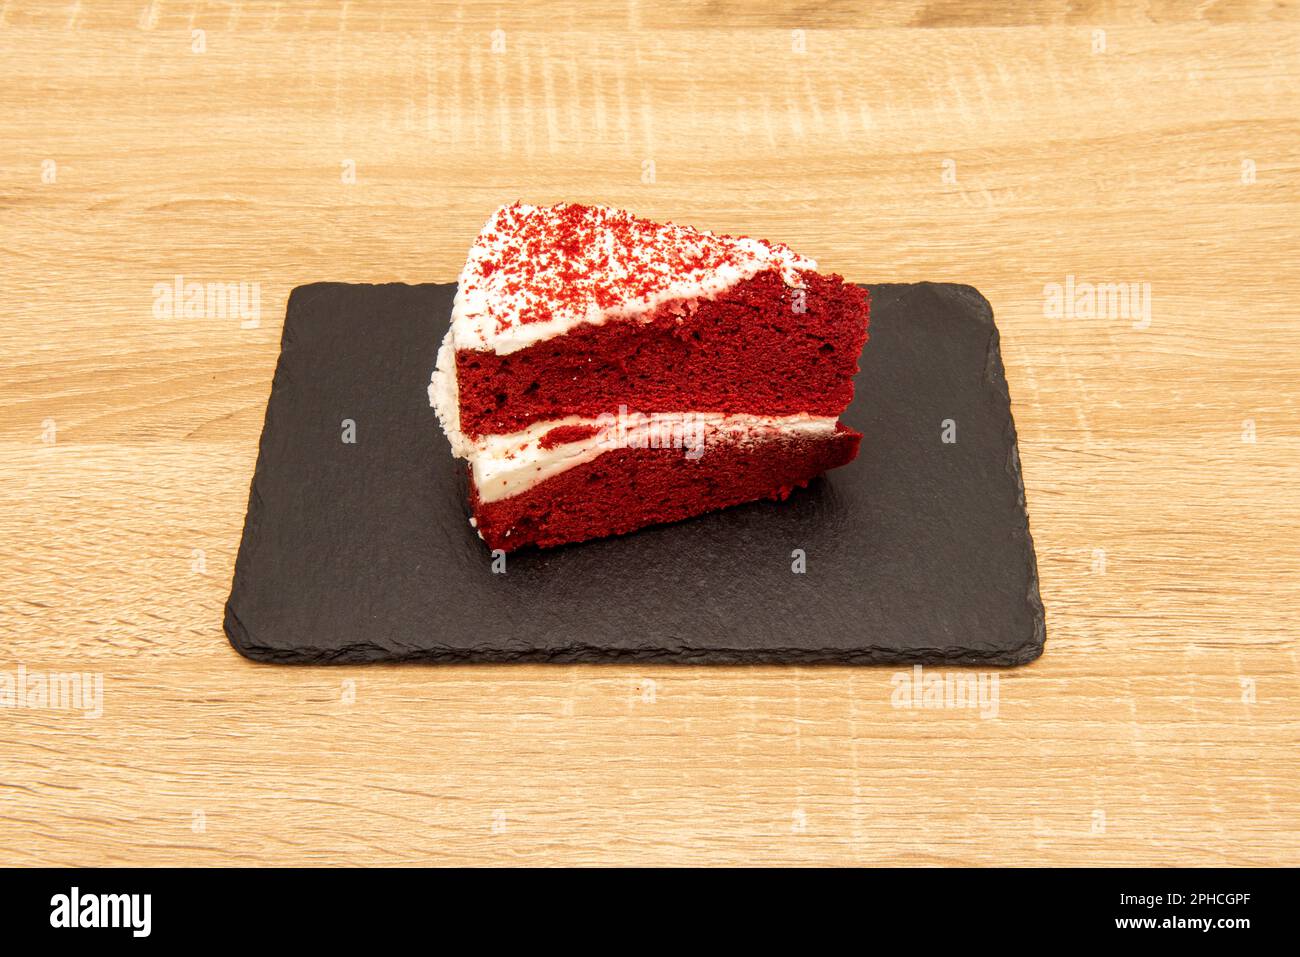 Ein roter Samtkuchen ist ein Schokoladenkuchen mit einer tiefroten oder leuchtend roten Farbe. In der Regel zubereitet als mehrschichtiger Kuchen, der mit einer Frischkäse-Glasur oder cooke bedeckt ist Stockfoto